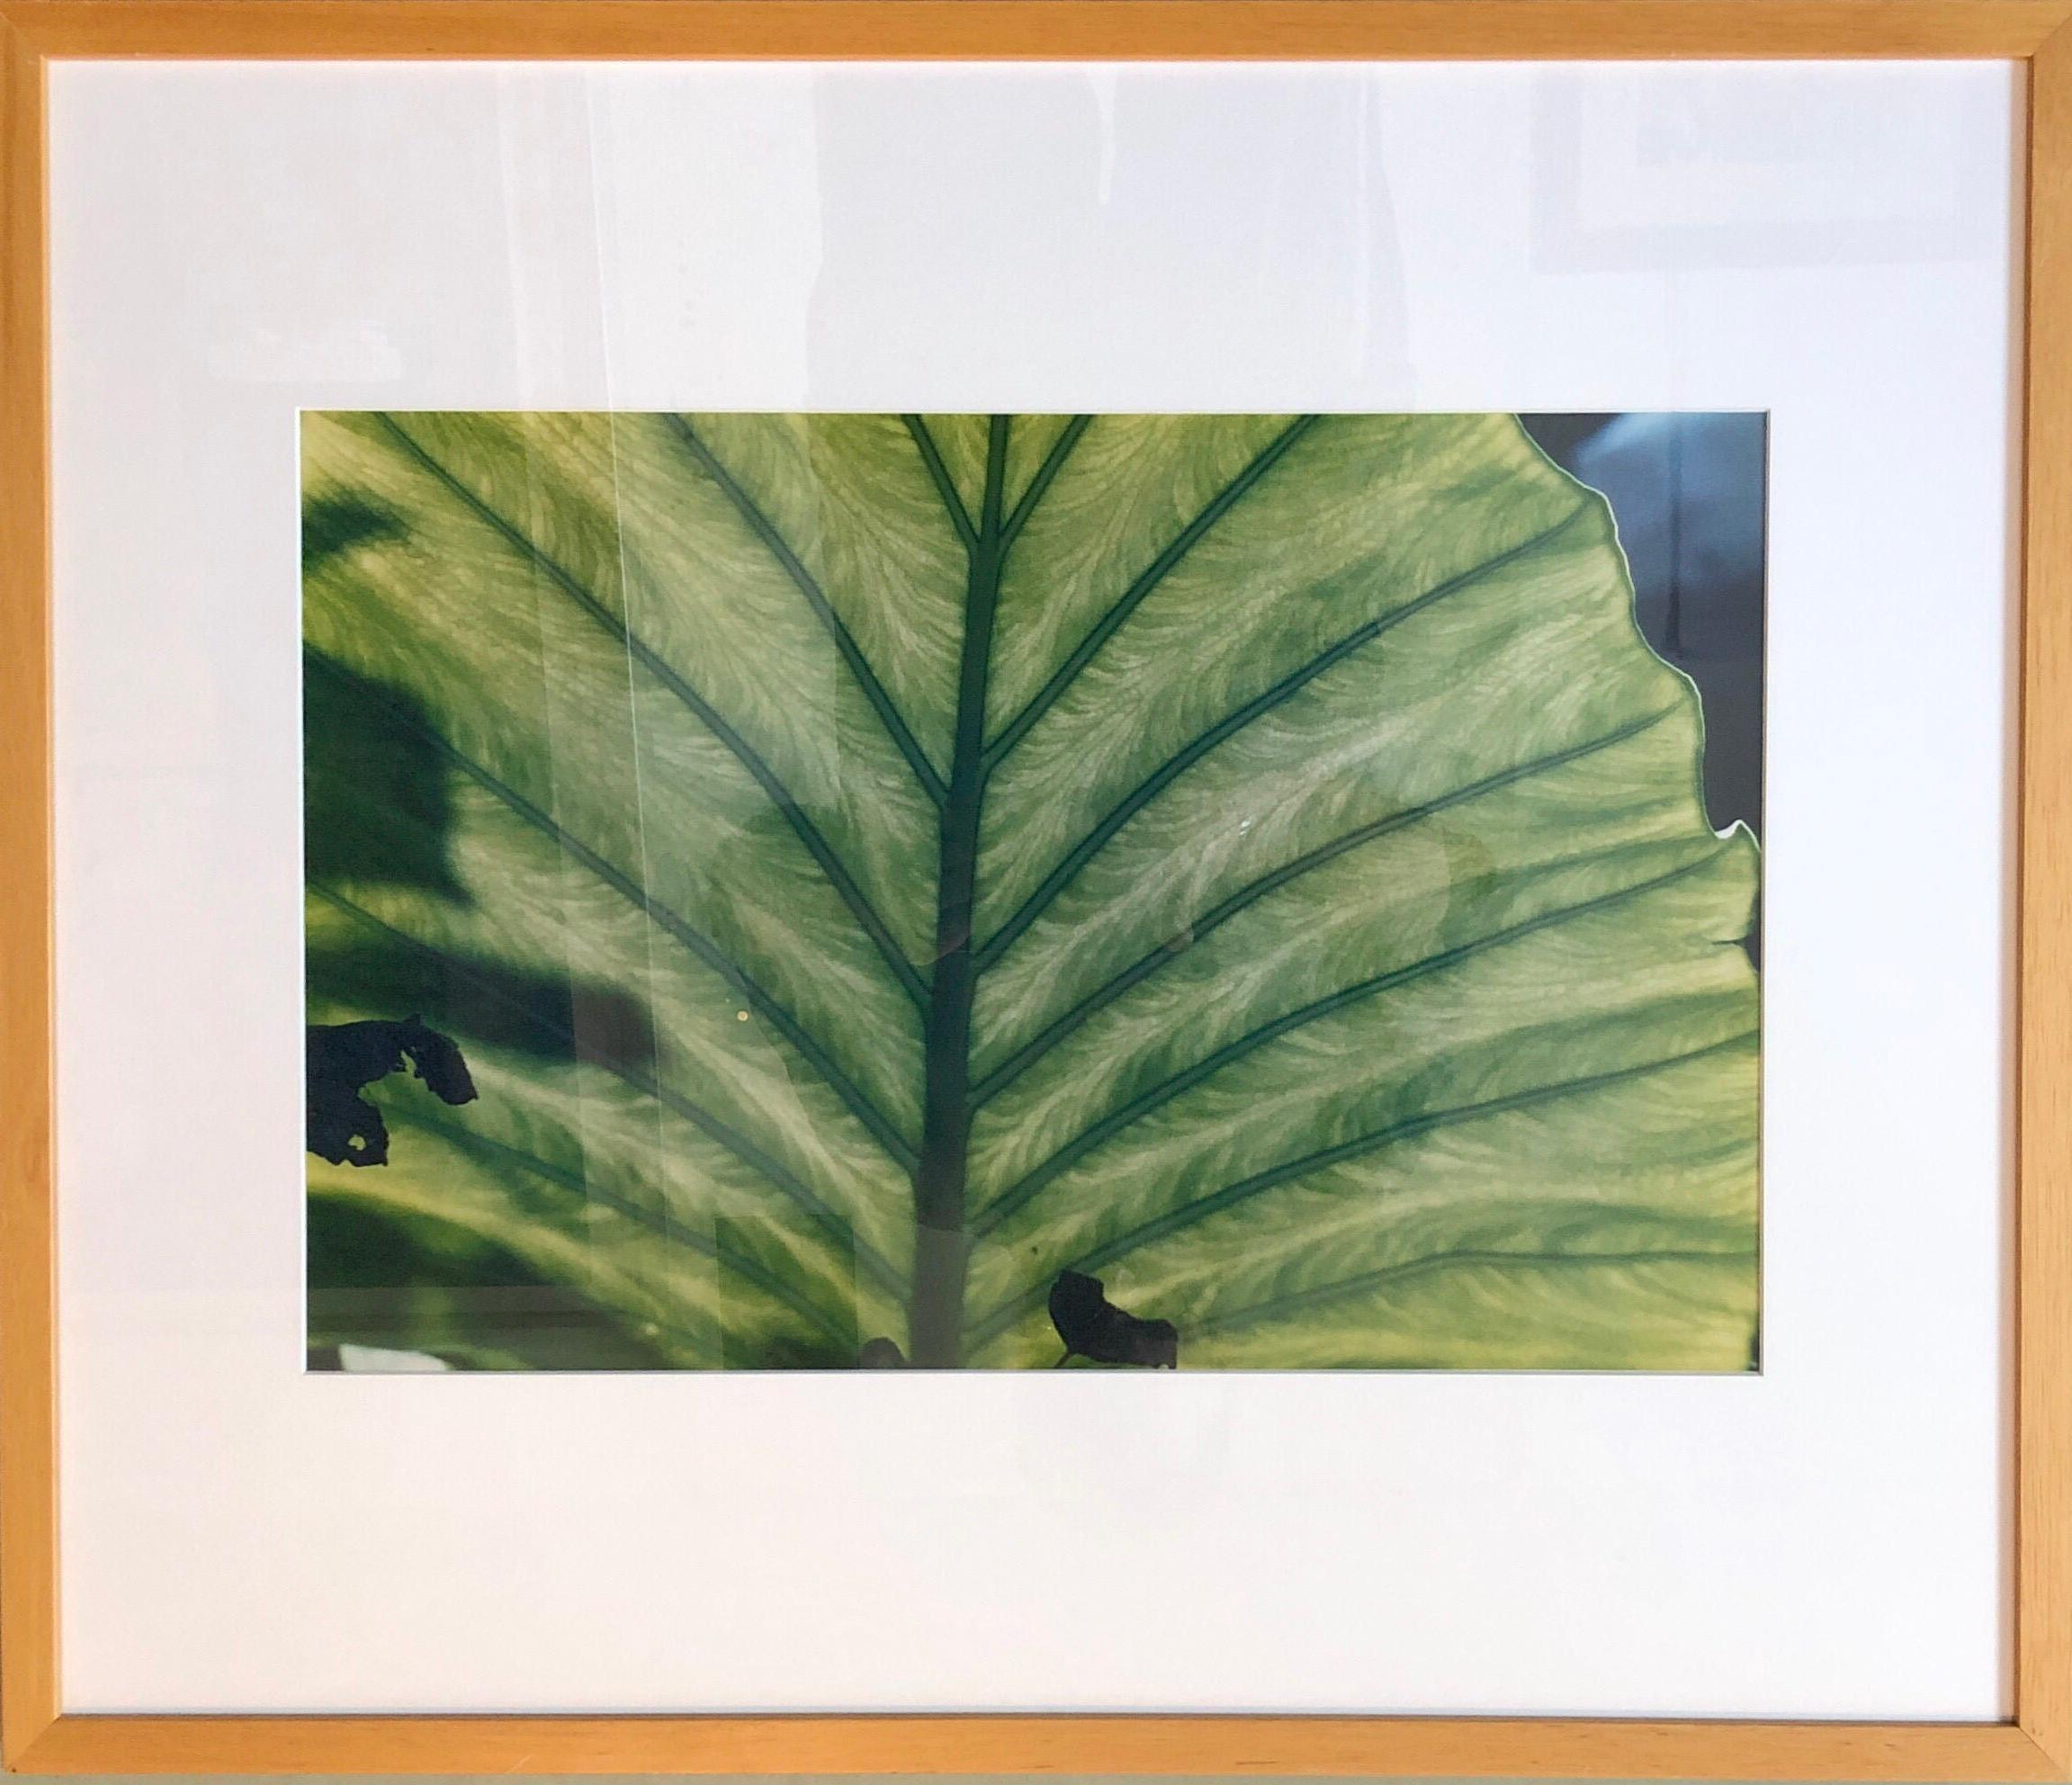 Evelyn Lauder Fotografie in limitierter Auflage.  
Überschrift: Luminous Leaf. Zeigt eine Nahaufnahme  Bild eines halbtransparenten Blattes mit Licht  durchscheinen. Maße: 16" x 20". Keine Signatur auf der Vorderseite, aber ich glaube, sie sind